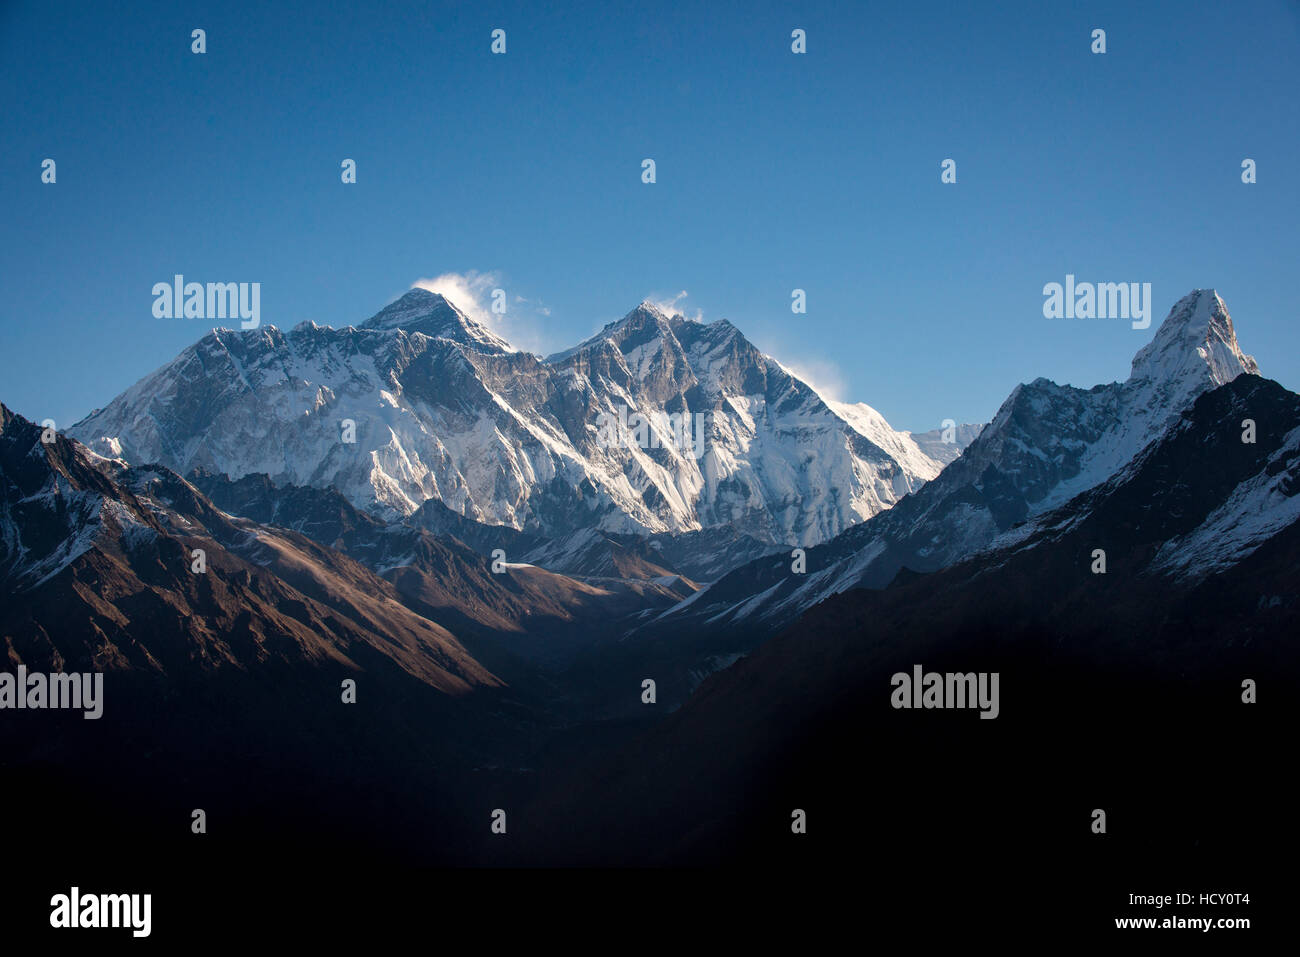 Eine Ansicht des Mount Everest, fernen Gipfel auf der linken Seite hinter der Nuptse-Lhotse-Grat von Kongde, Region Khumbu, Nepal Stockfoto